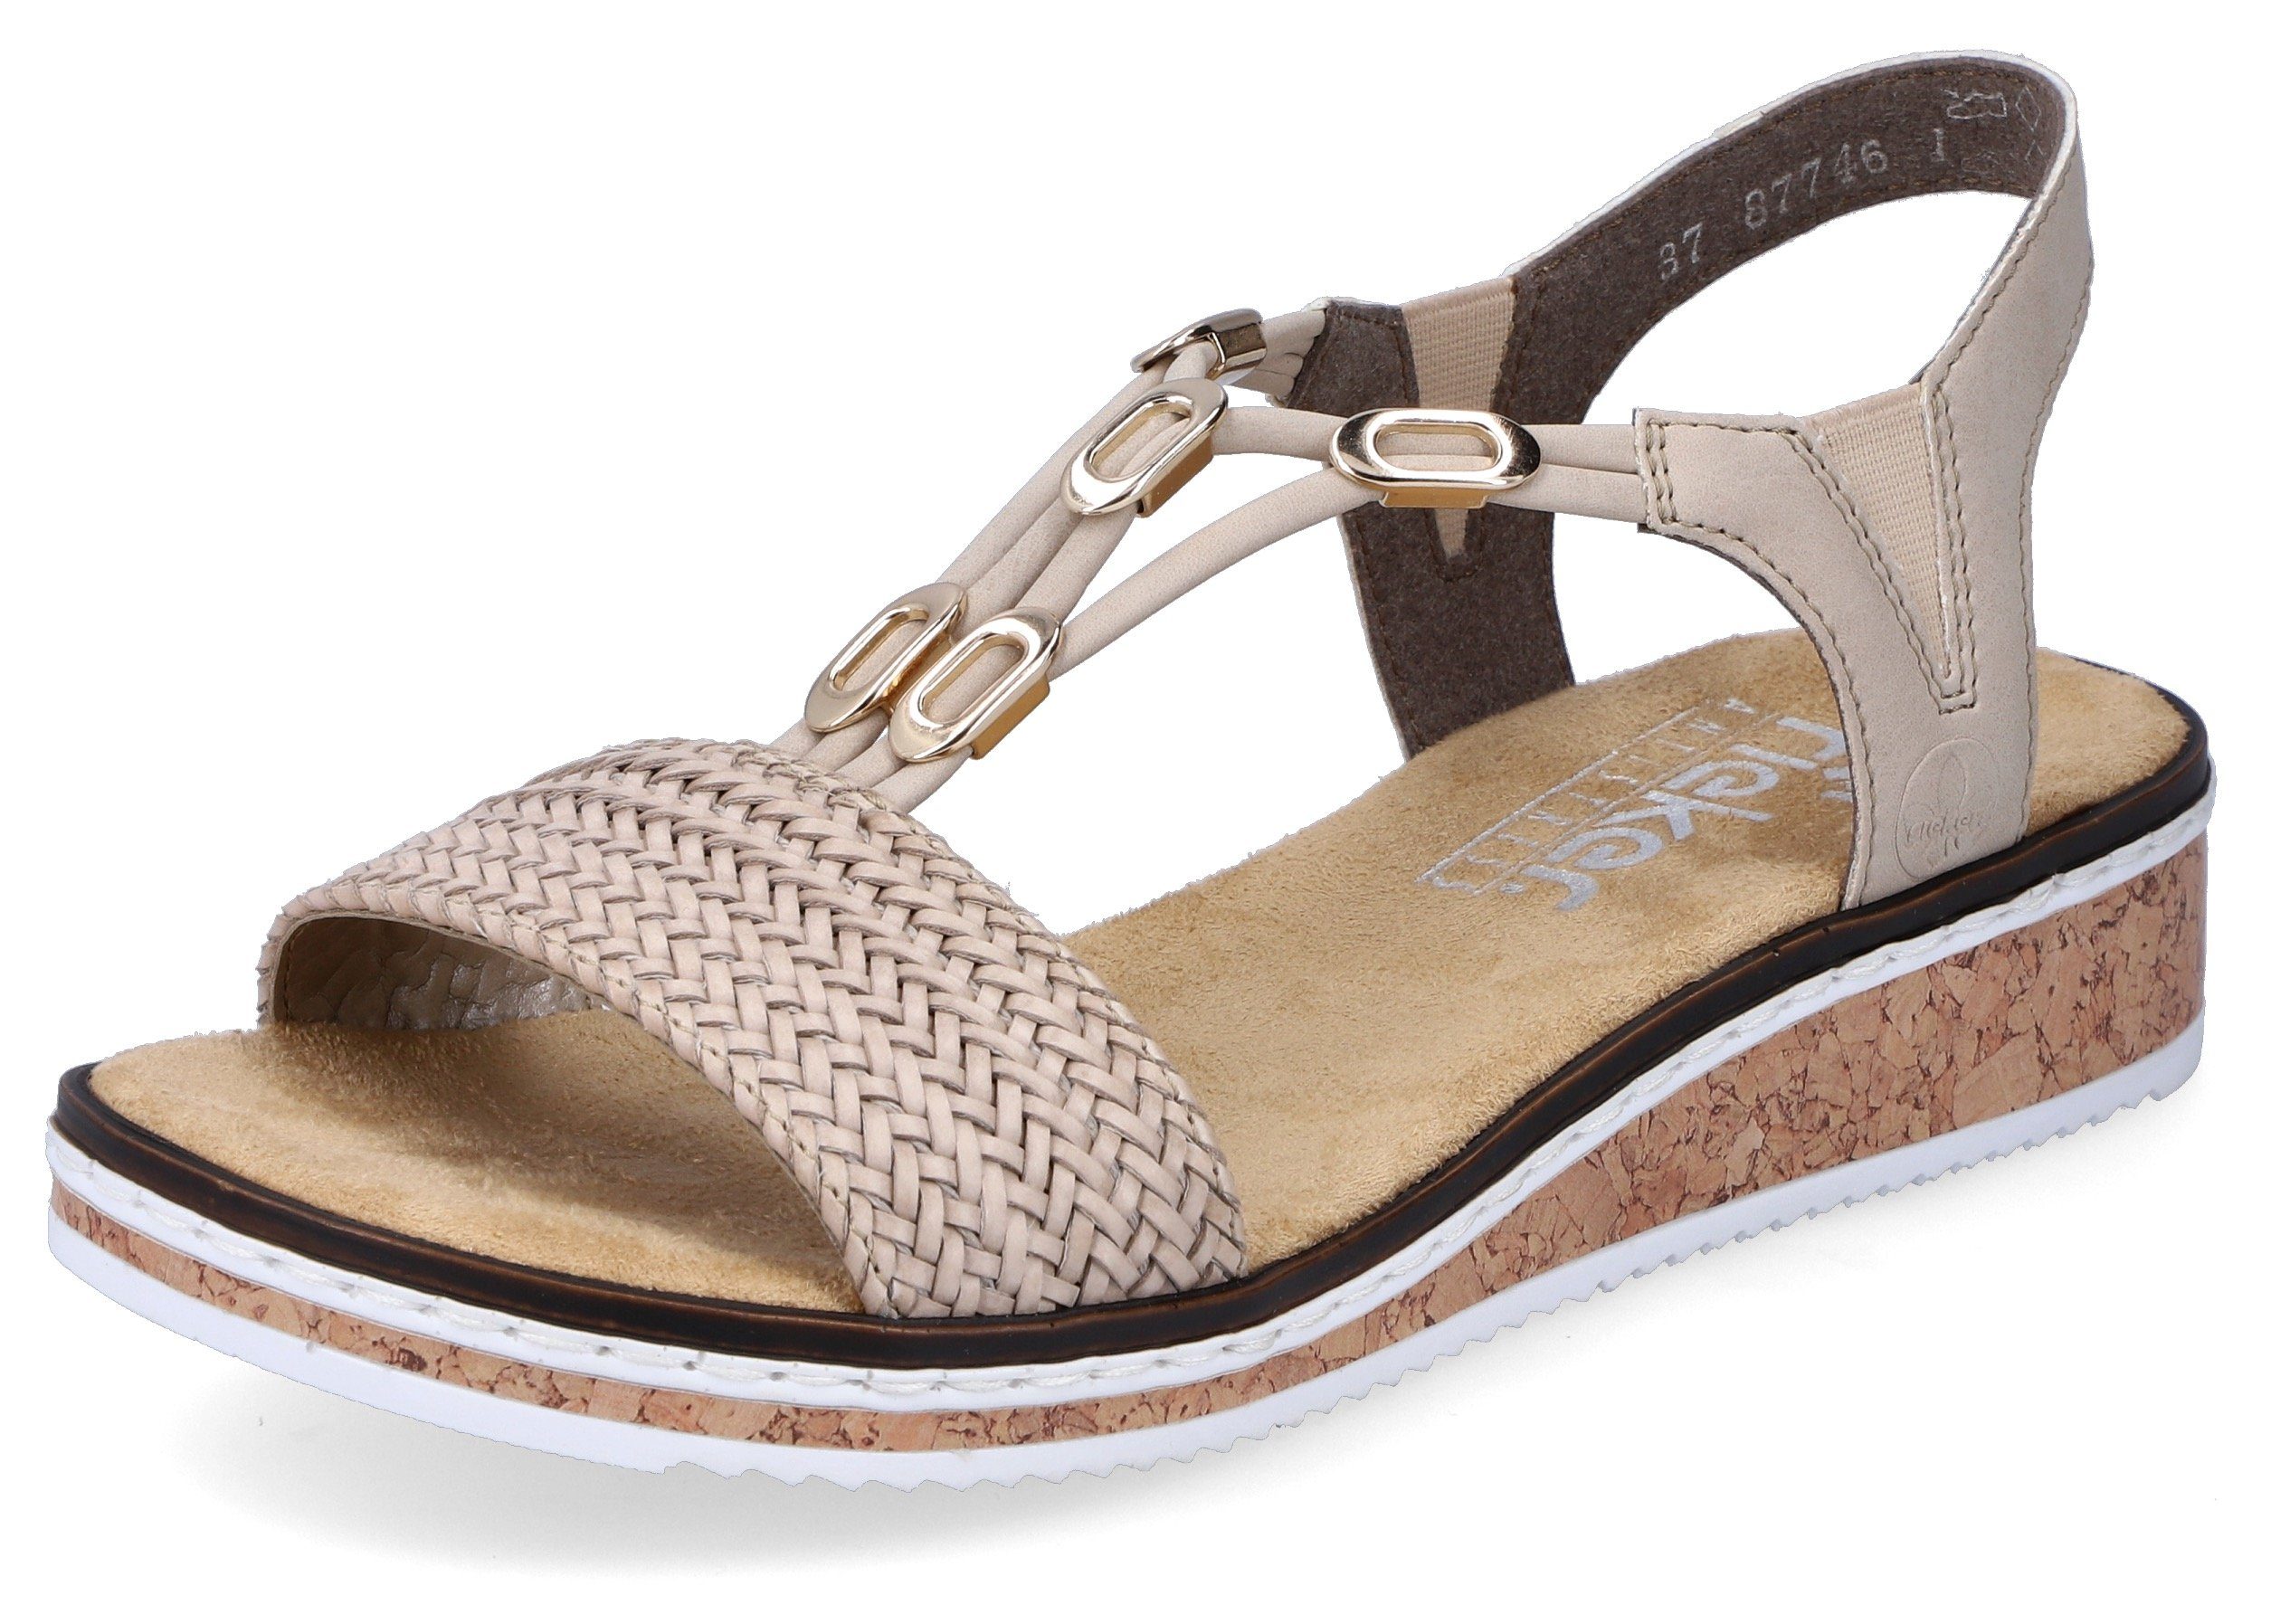 Rieker Sandale in geflochtenem Look online kaufen | OTTO